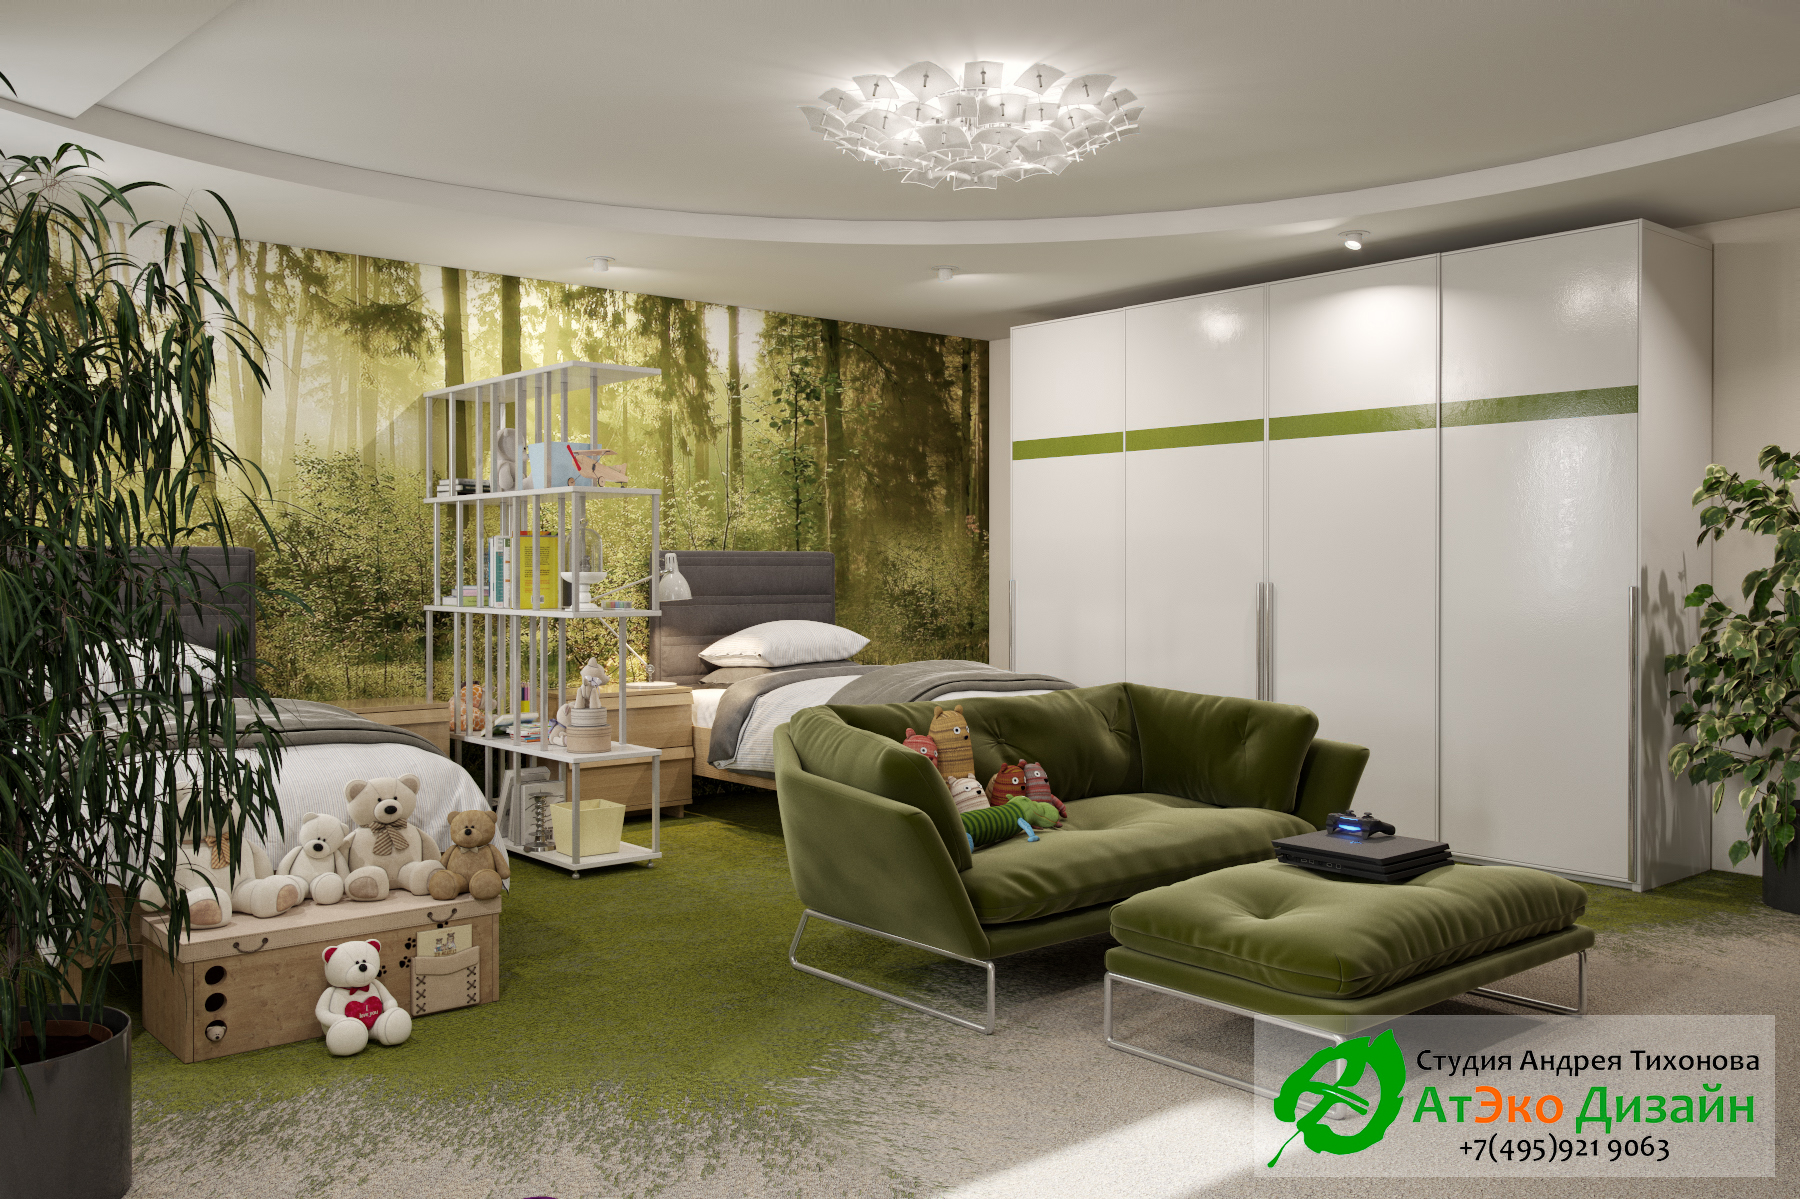 Фото дизайна спальной комнаты и зоны отдыха для детей в апартаментах